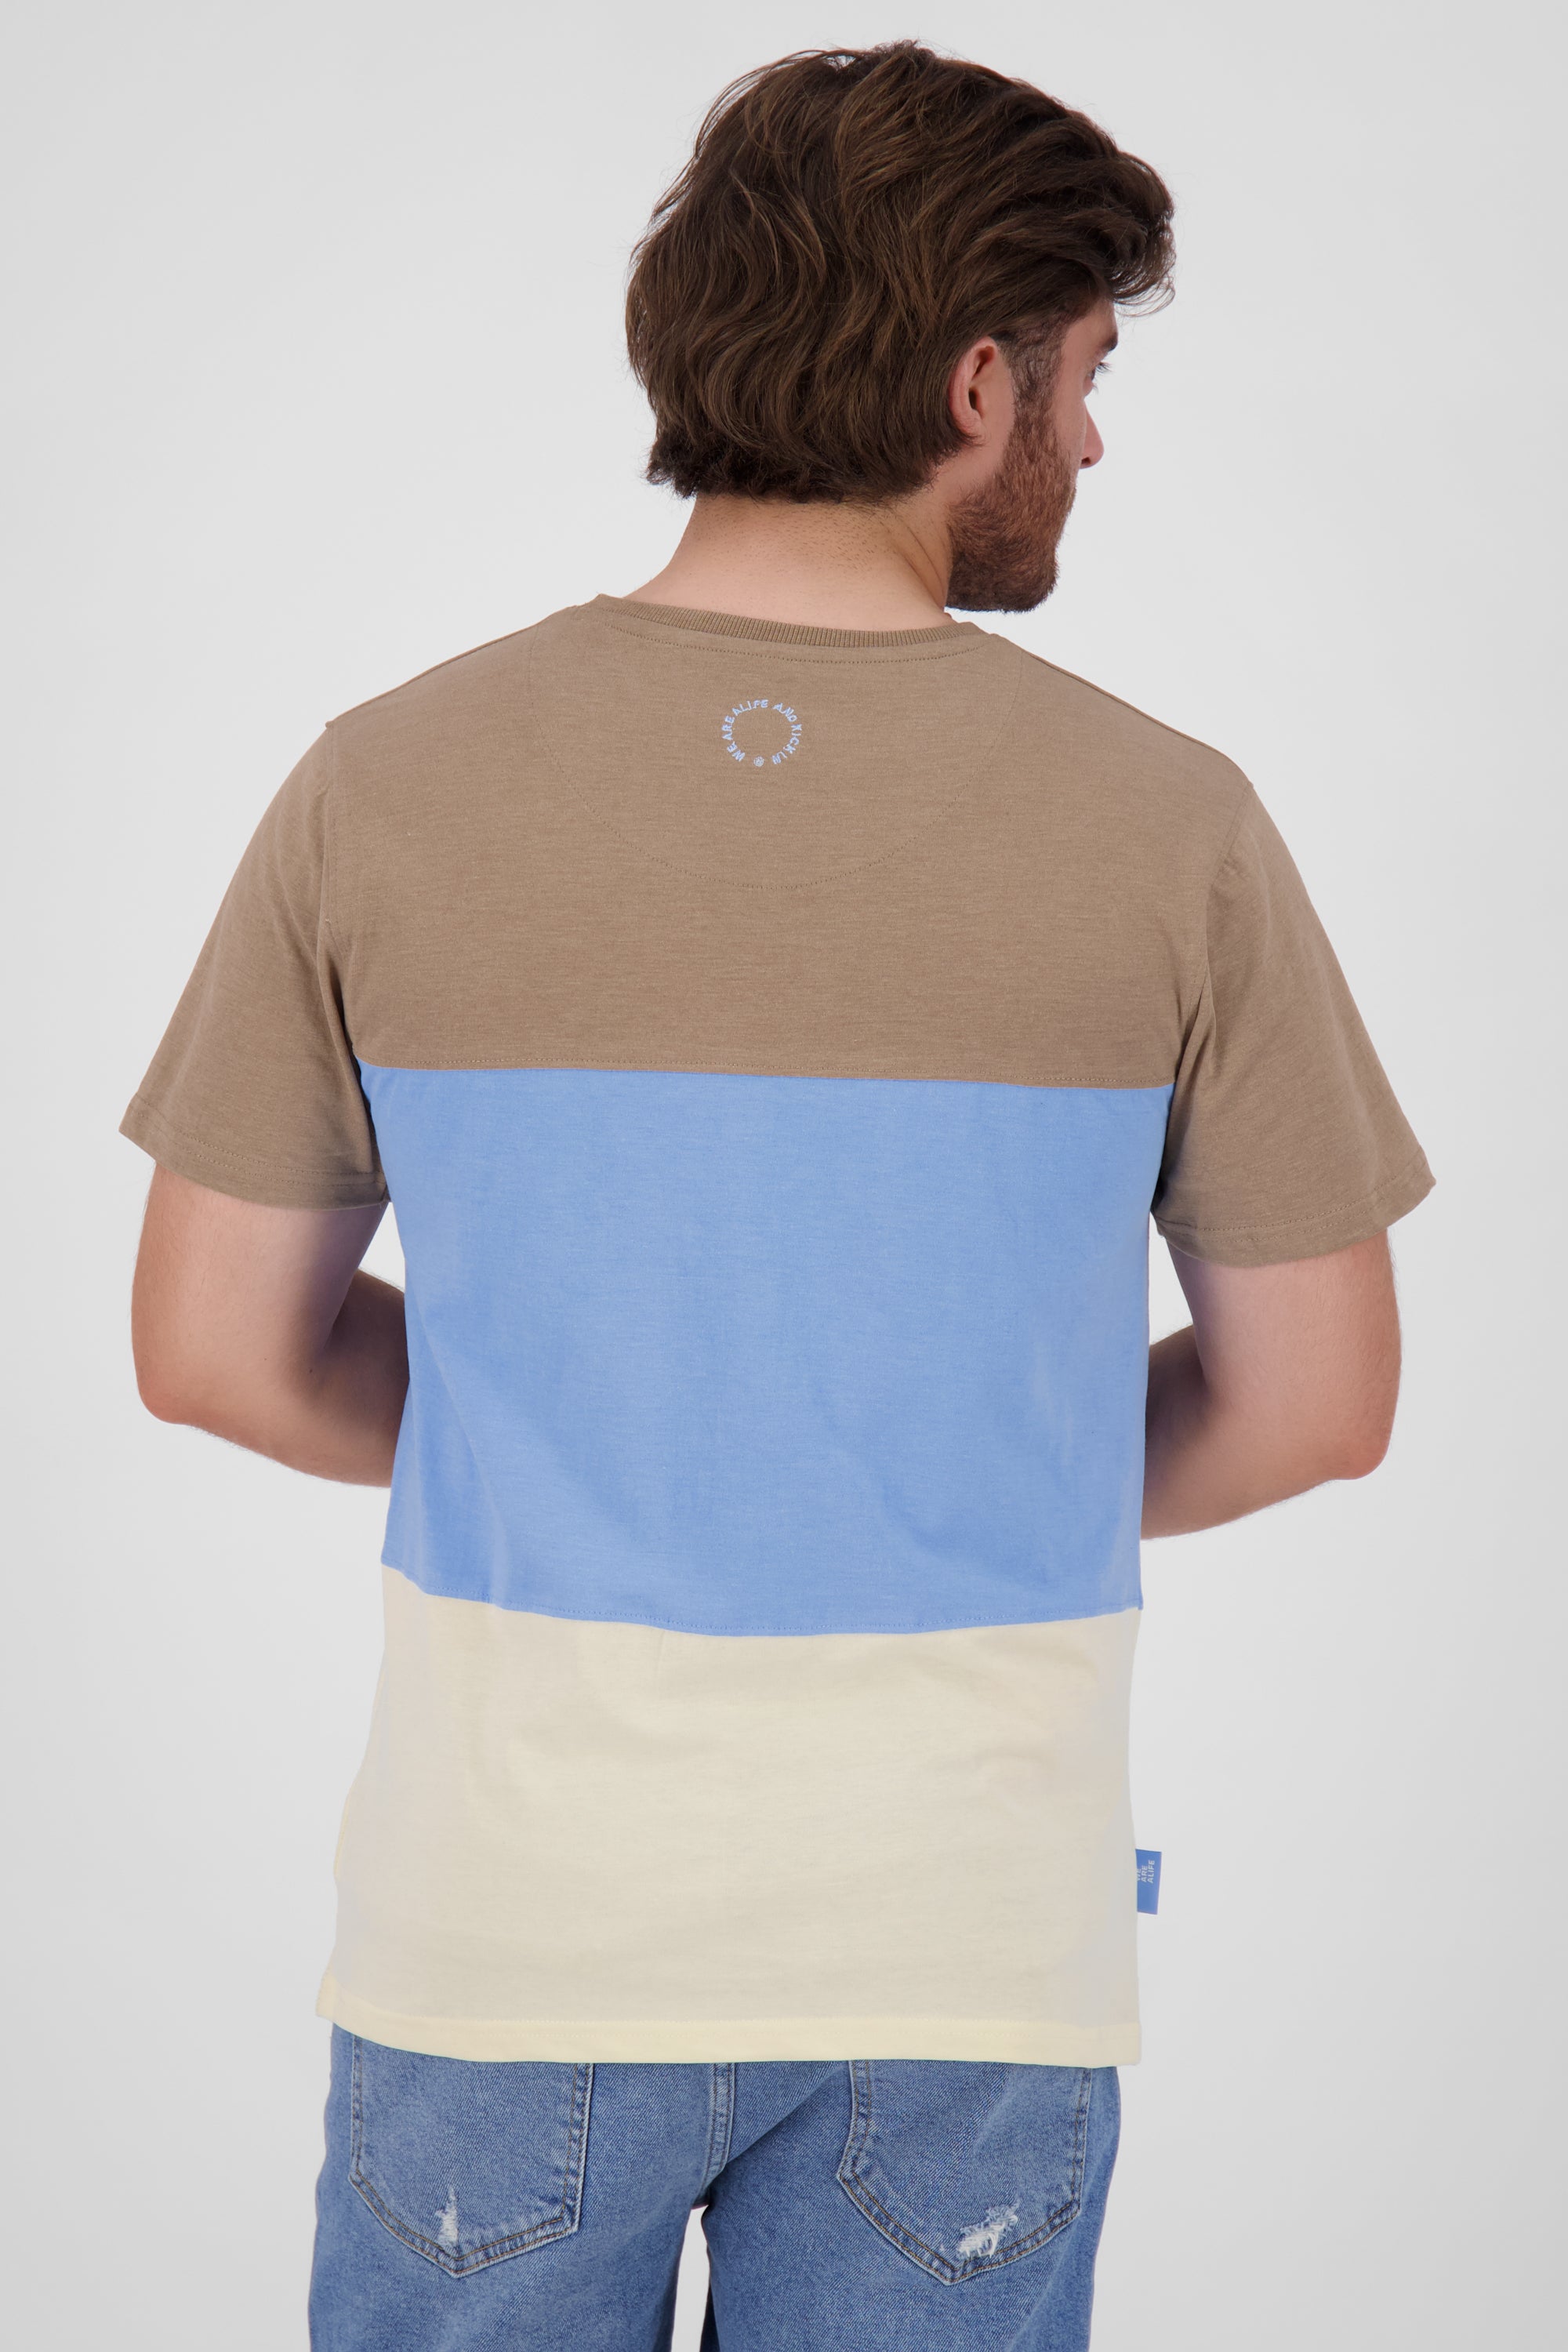 Vielseitiger Begleiter - BenAK A T-Shirt für Herren in weicher Jerseyqualität Gelb